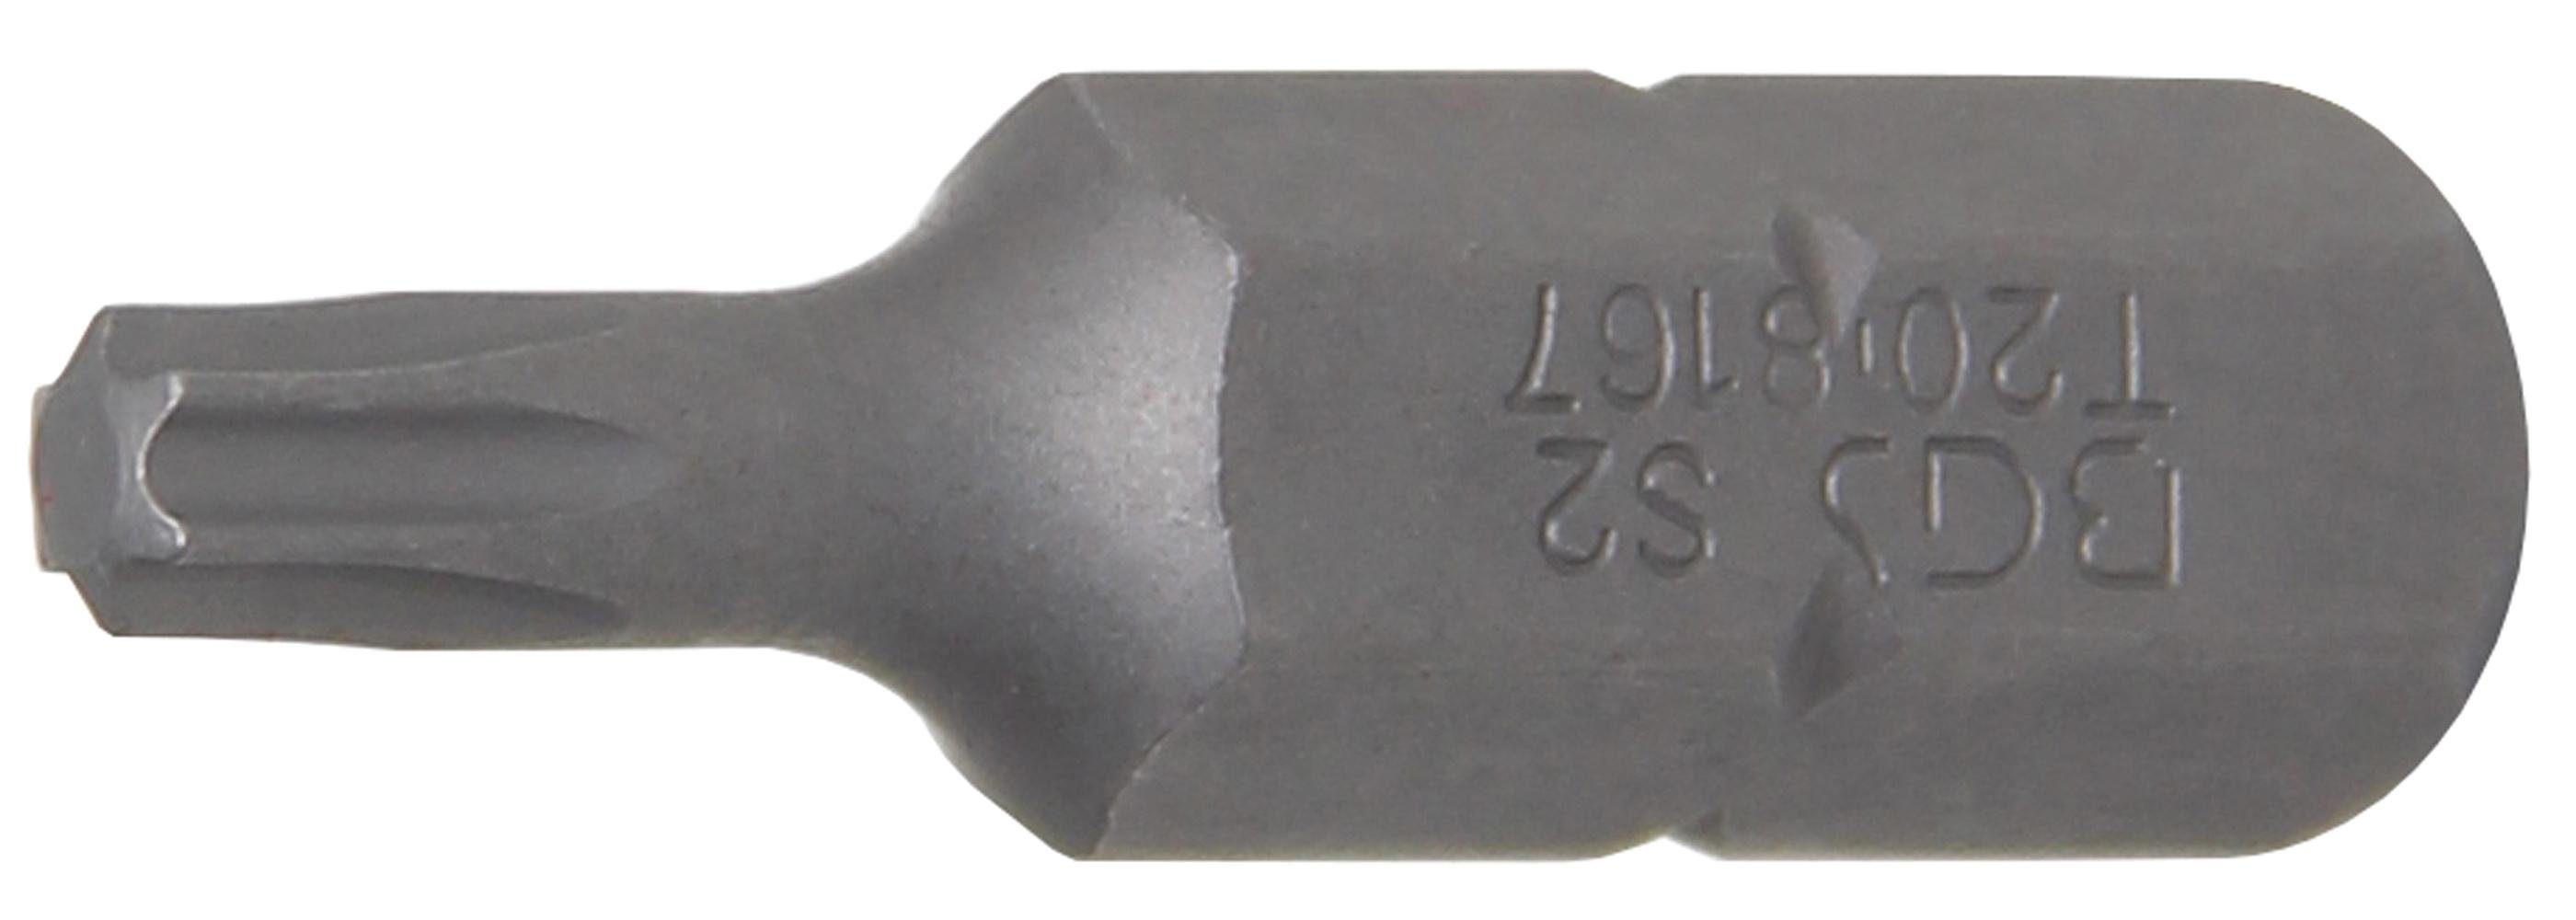 BGS technic Bit-Schraubendreher Bit, Antrieb Außensechskant 8 mm (5/16), T-Profil (für Torx) T20